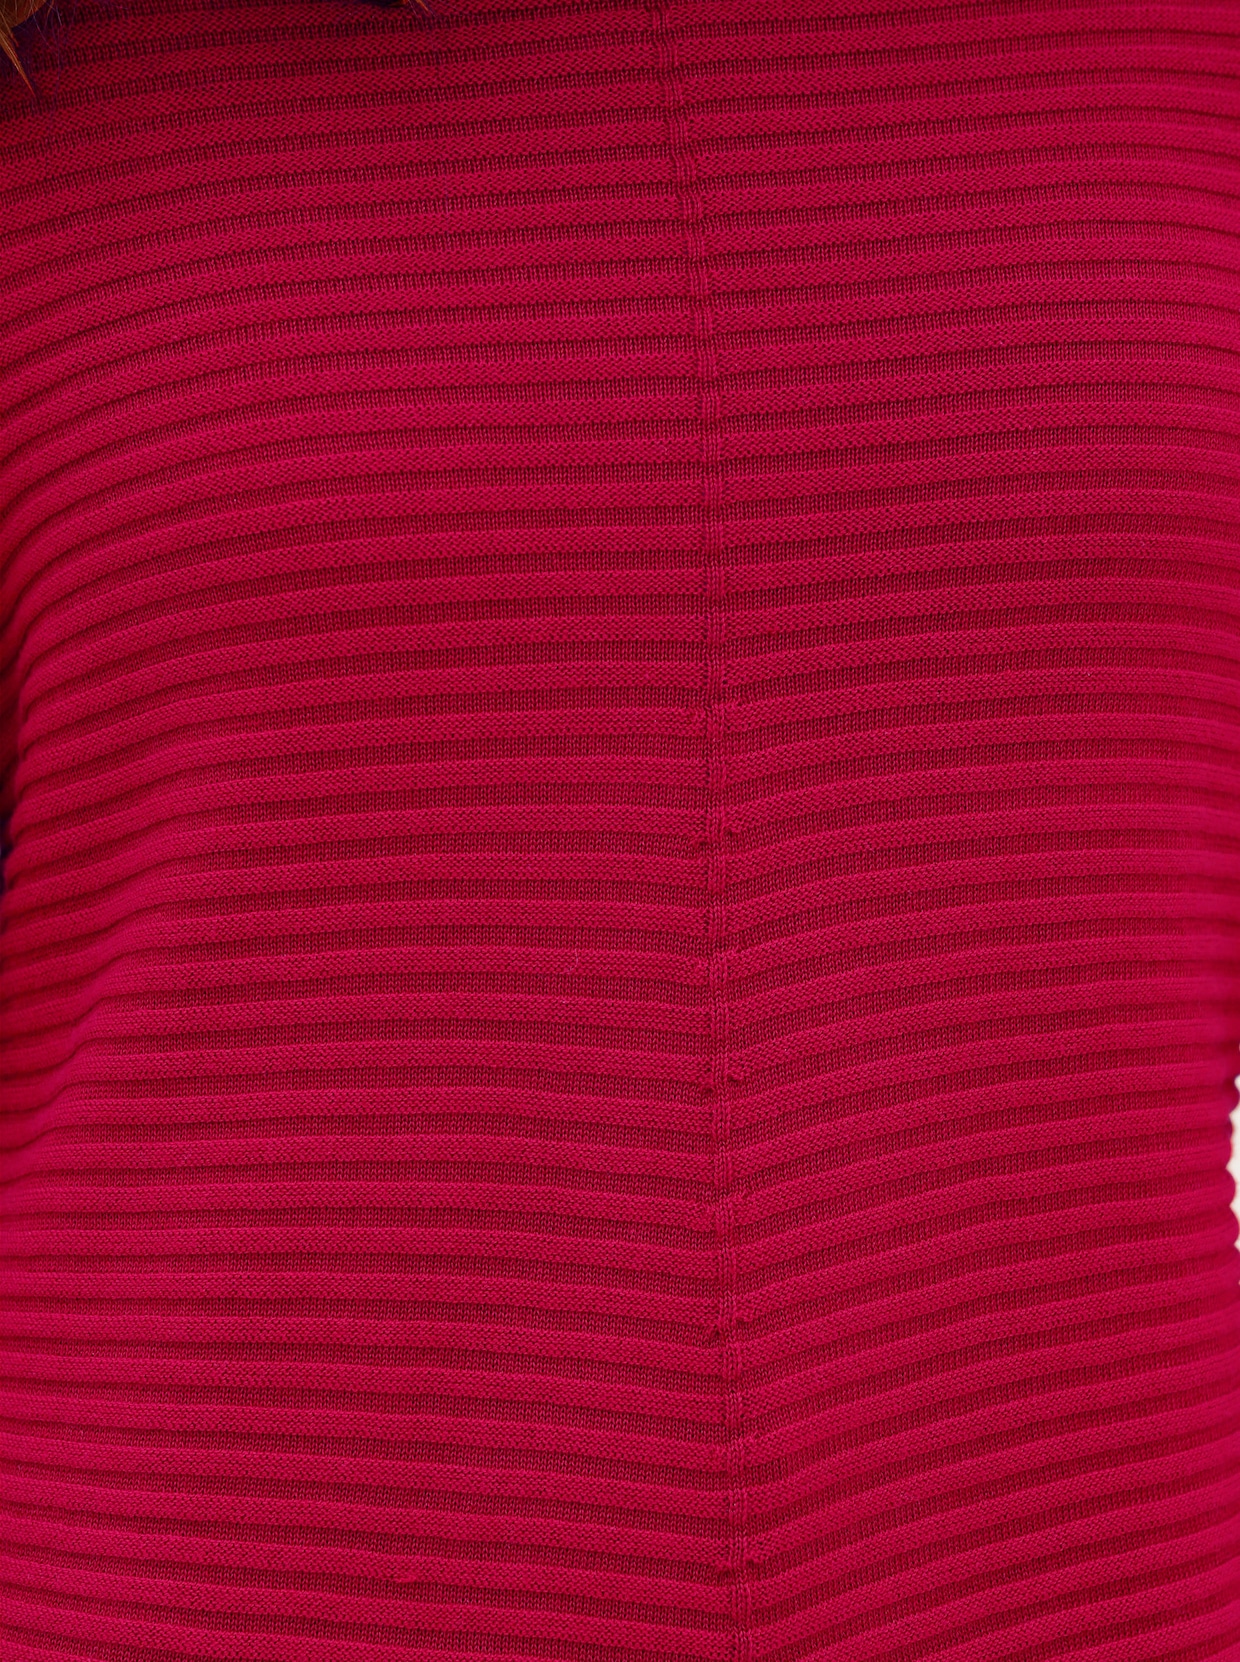 Pullover met ronde hals - rood